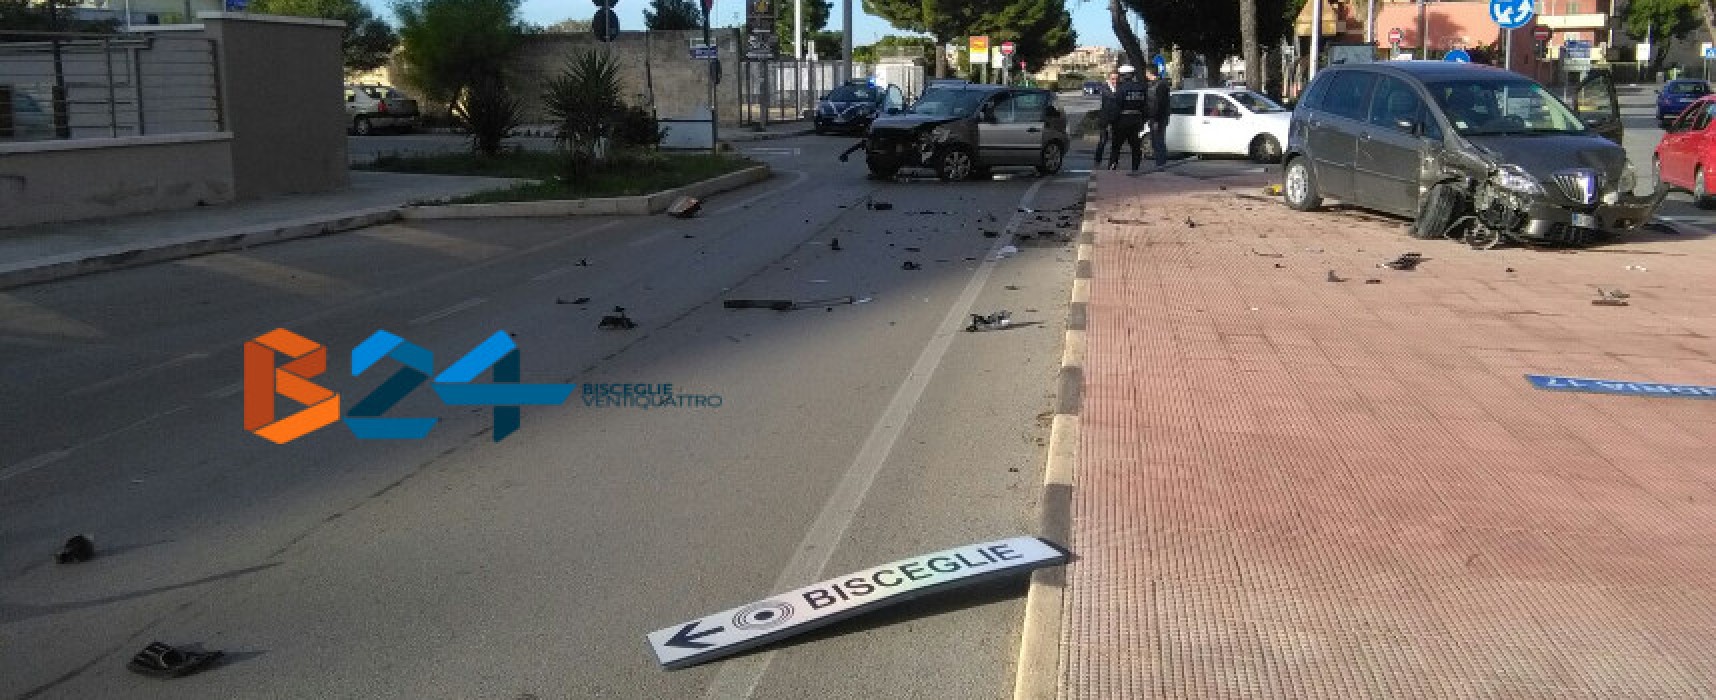 Violento incidente stradale in via San Martino, autisti illesi /FOTO